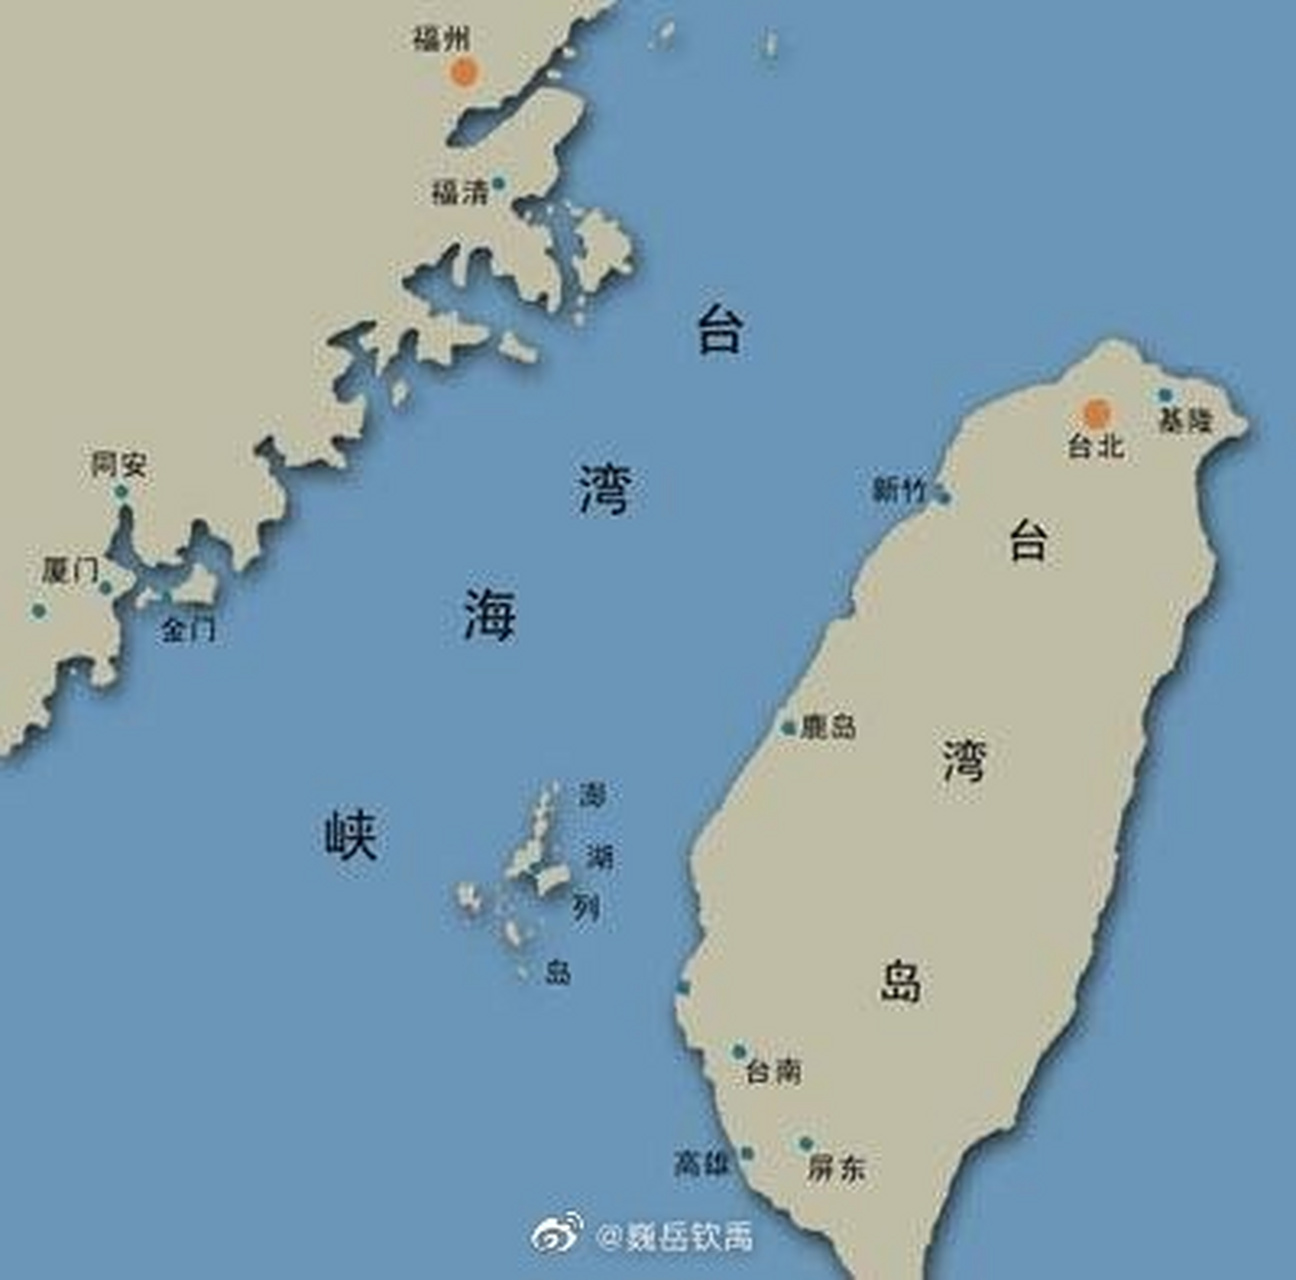 1950年朝鲜战争爆发,美国第七舰队开进台湾海峡,阻碍解放军统一台湾